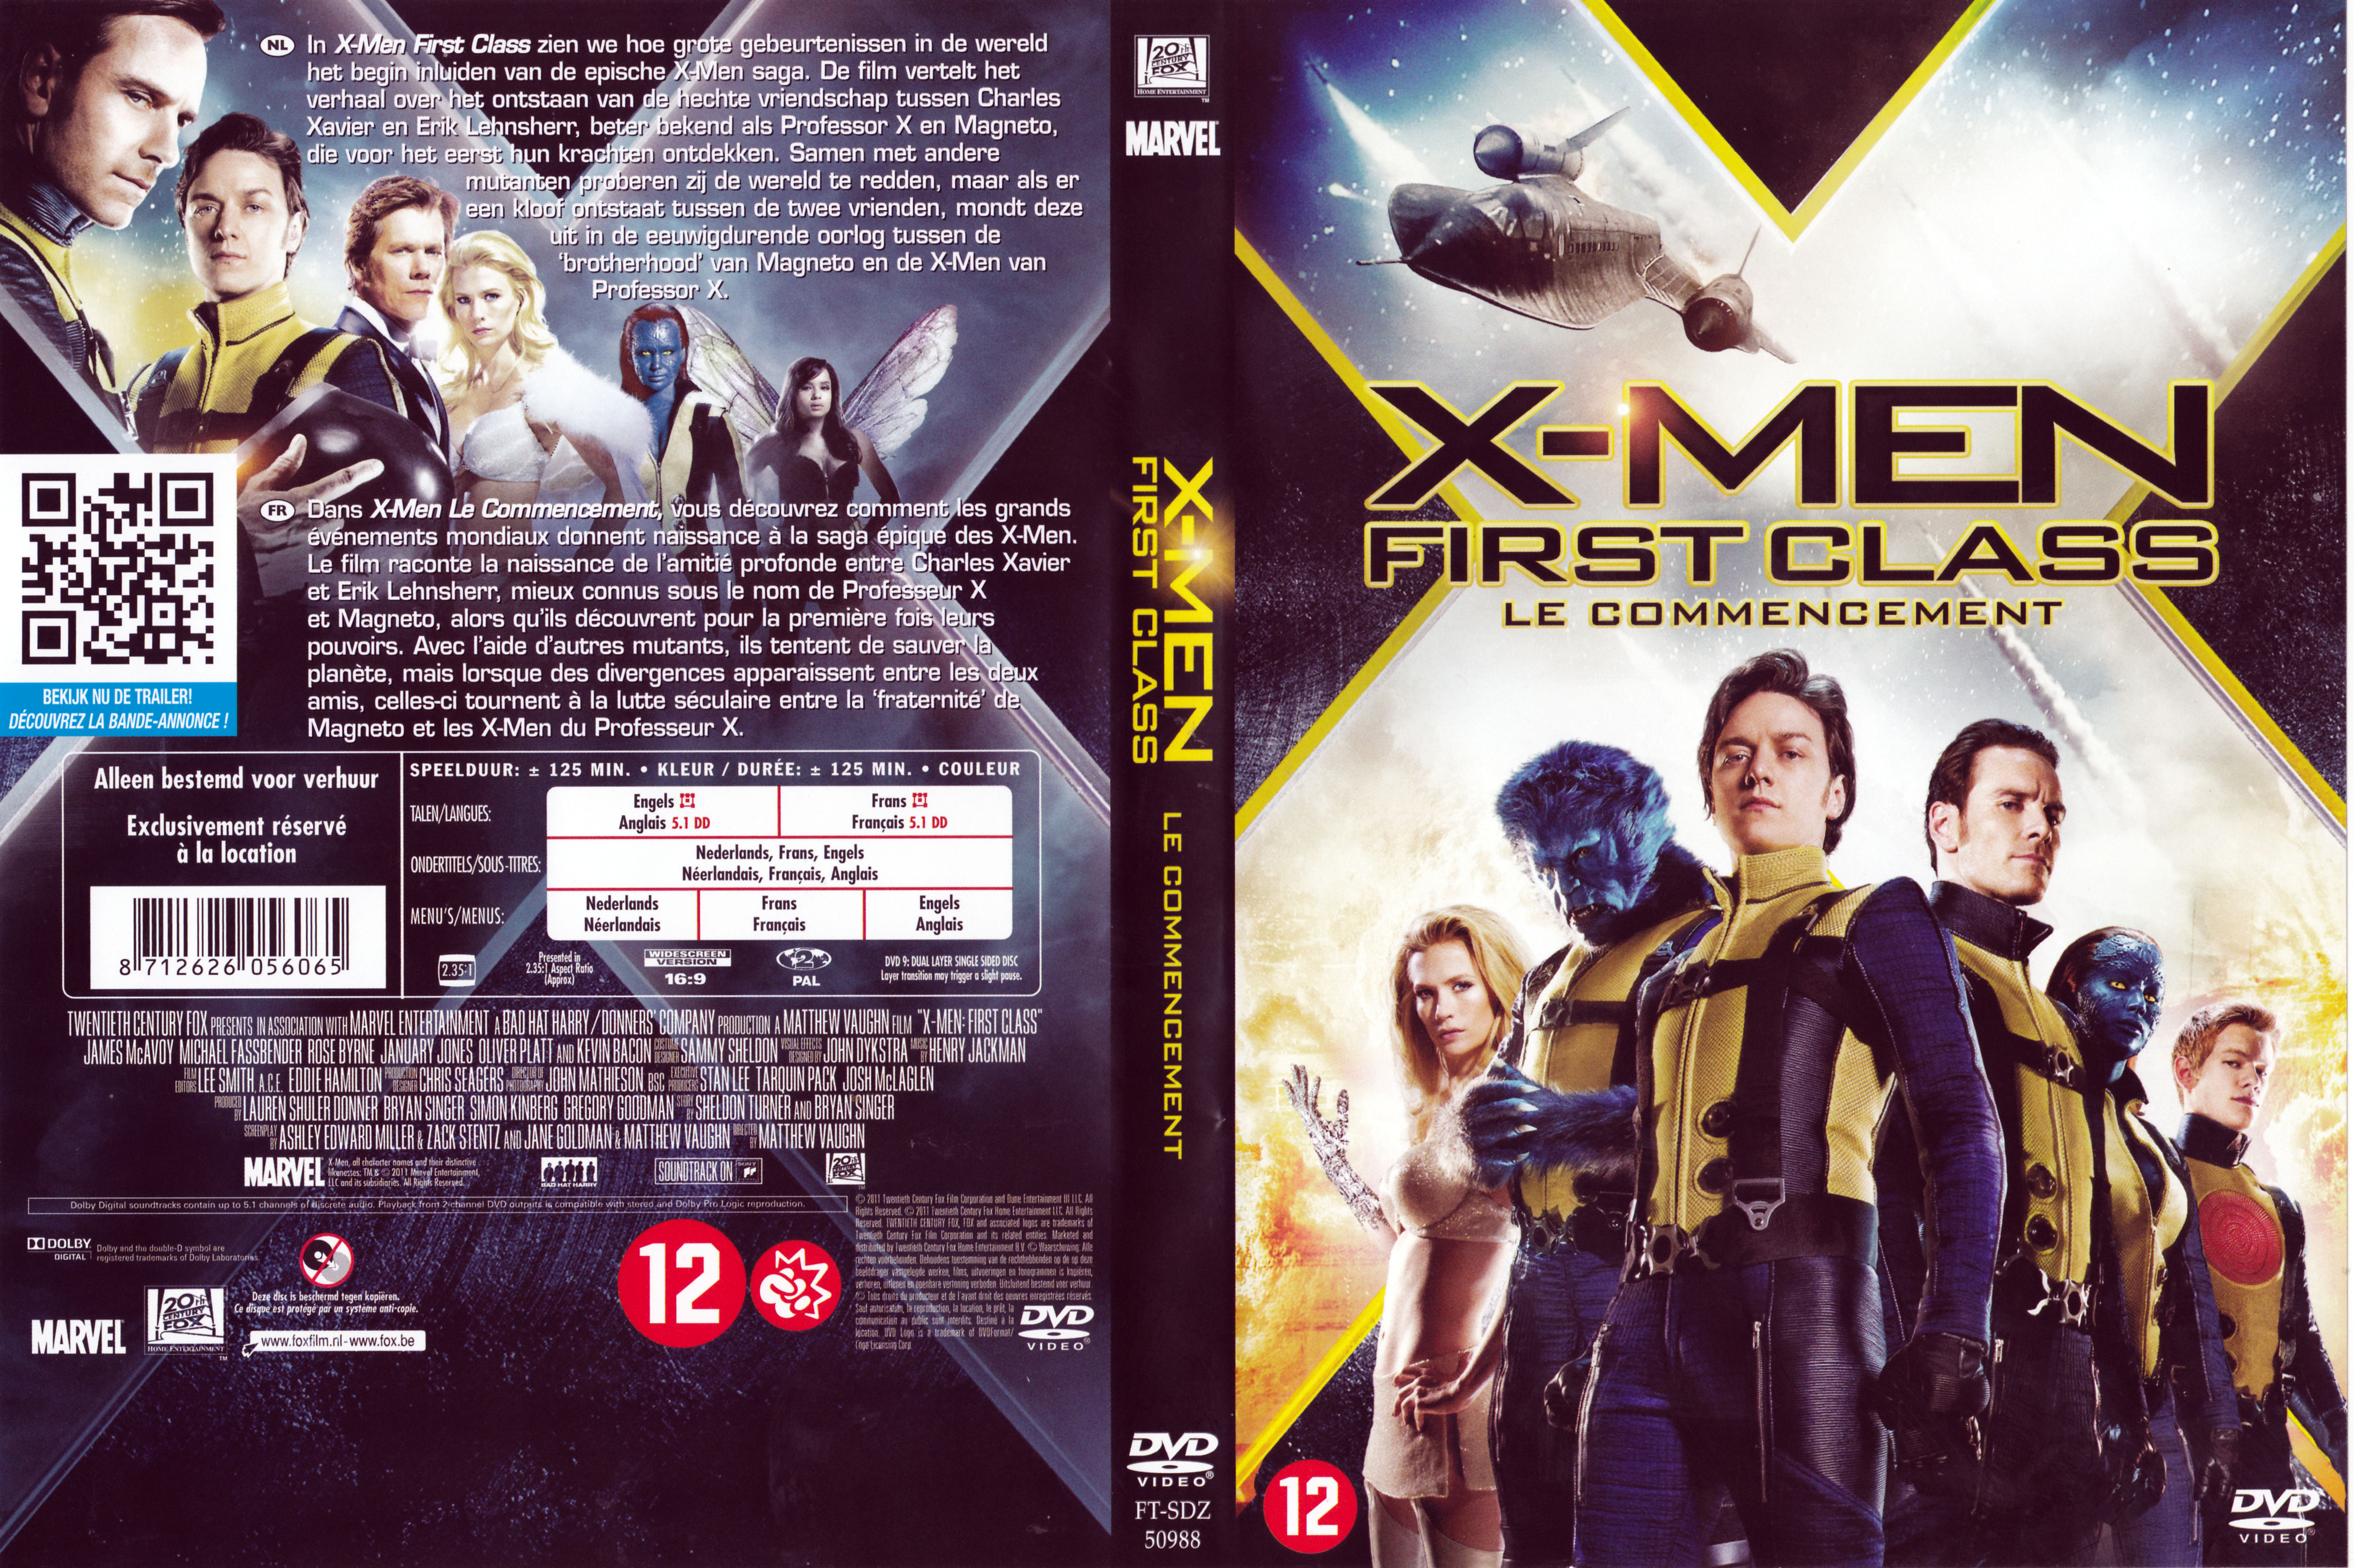 Jaquette DVD de X-men - Cinéma Passion